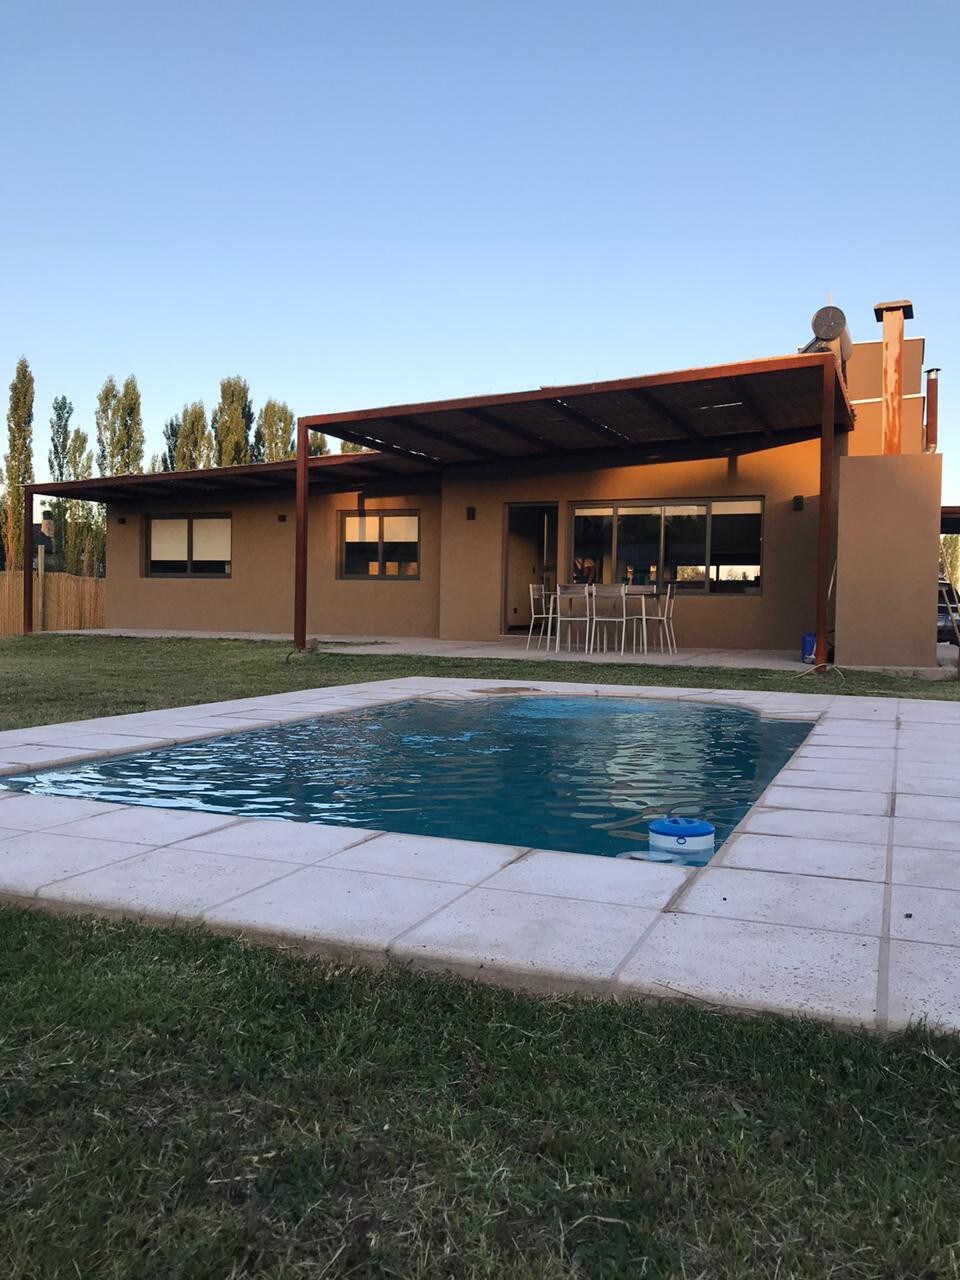 Casa a estrenar con piscina en Chacras de Coria